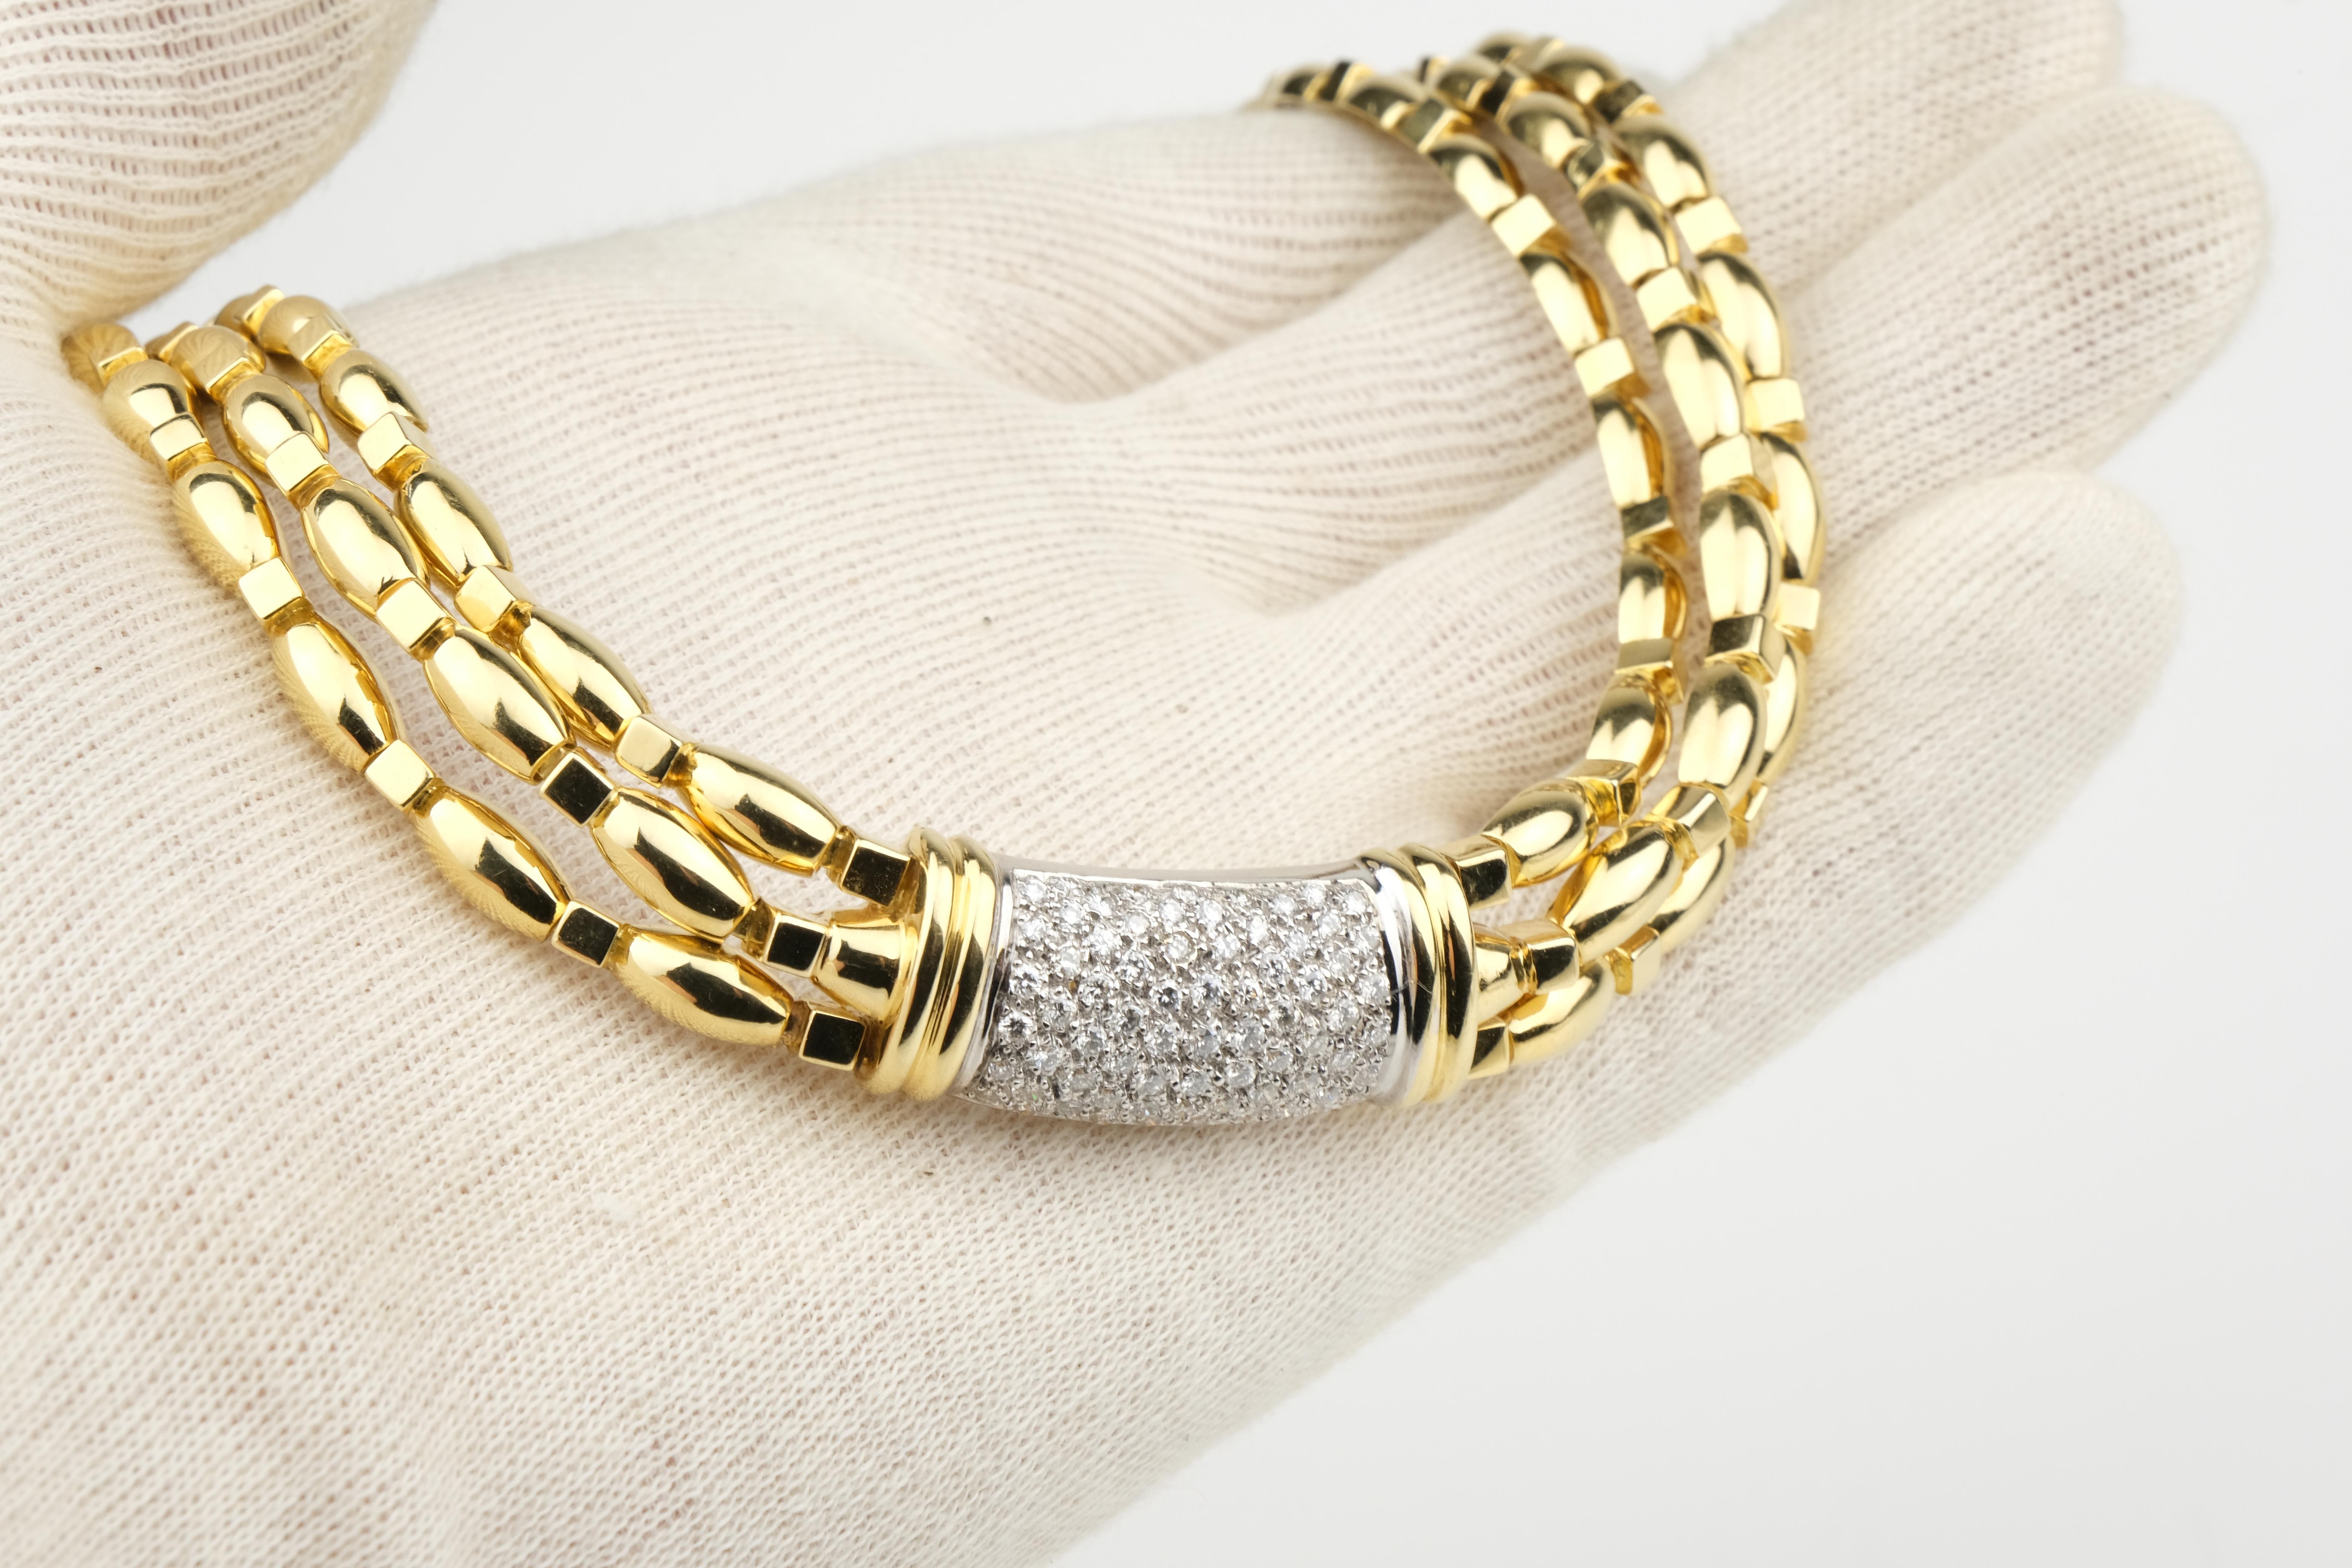 Materials: 18 Karat Gold
Necklace Length: 15.50